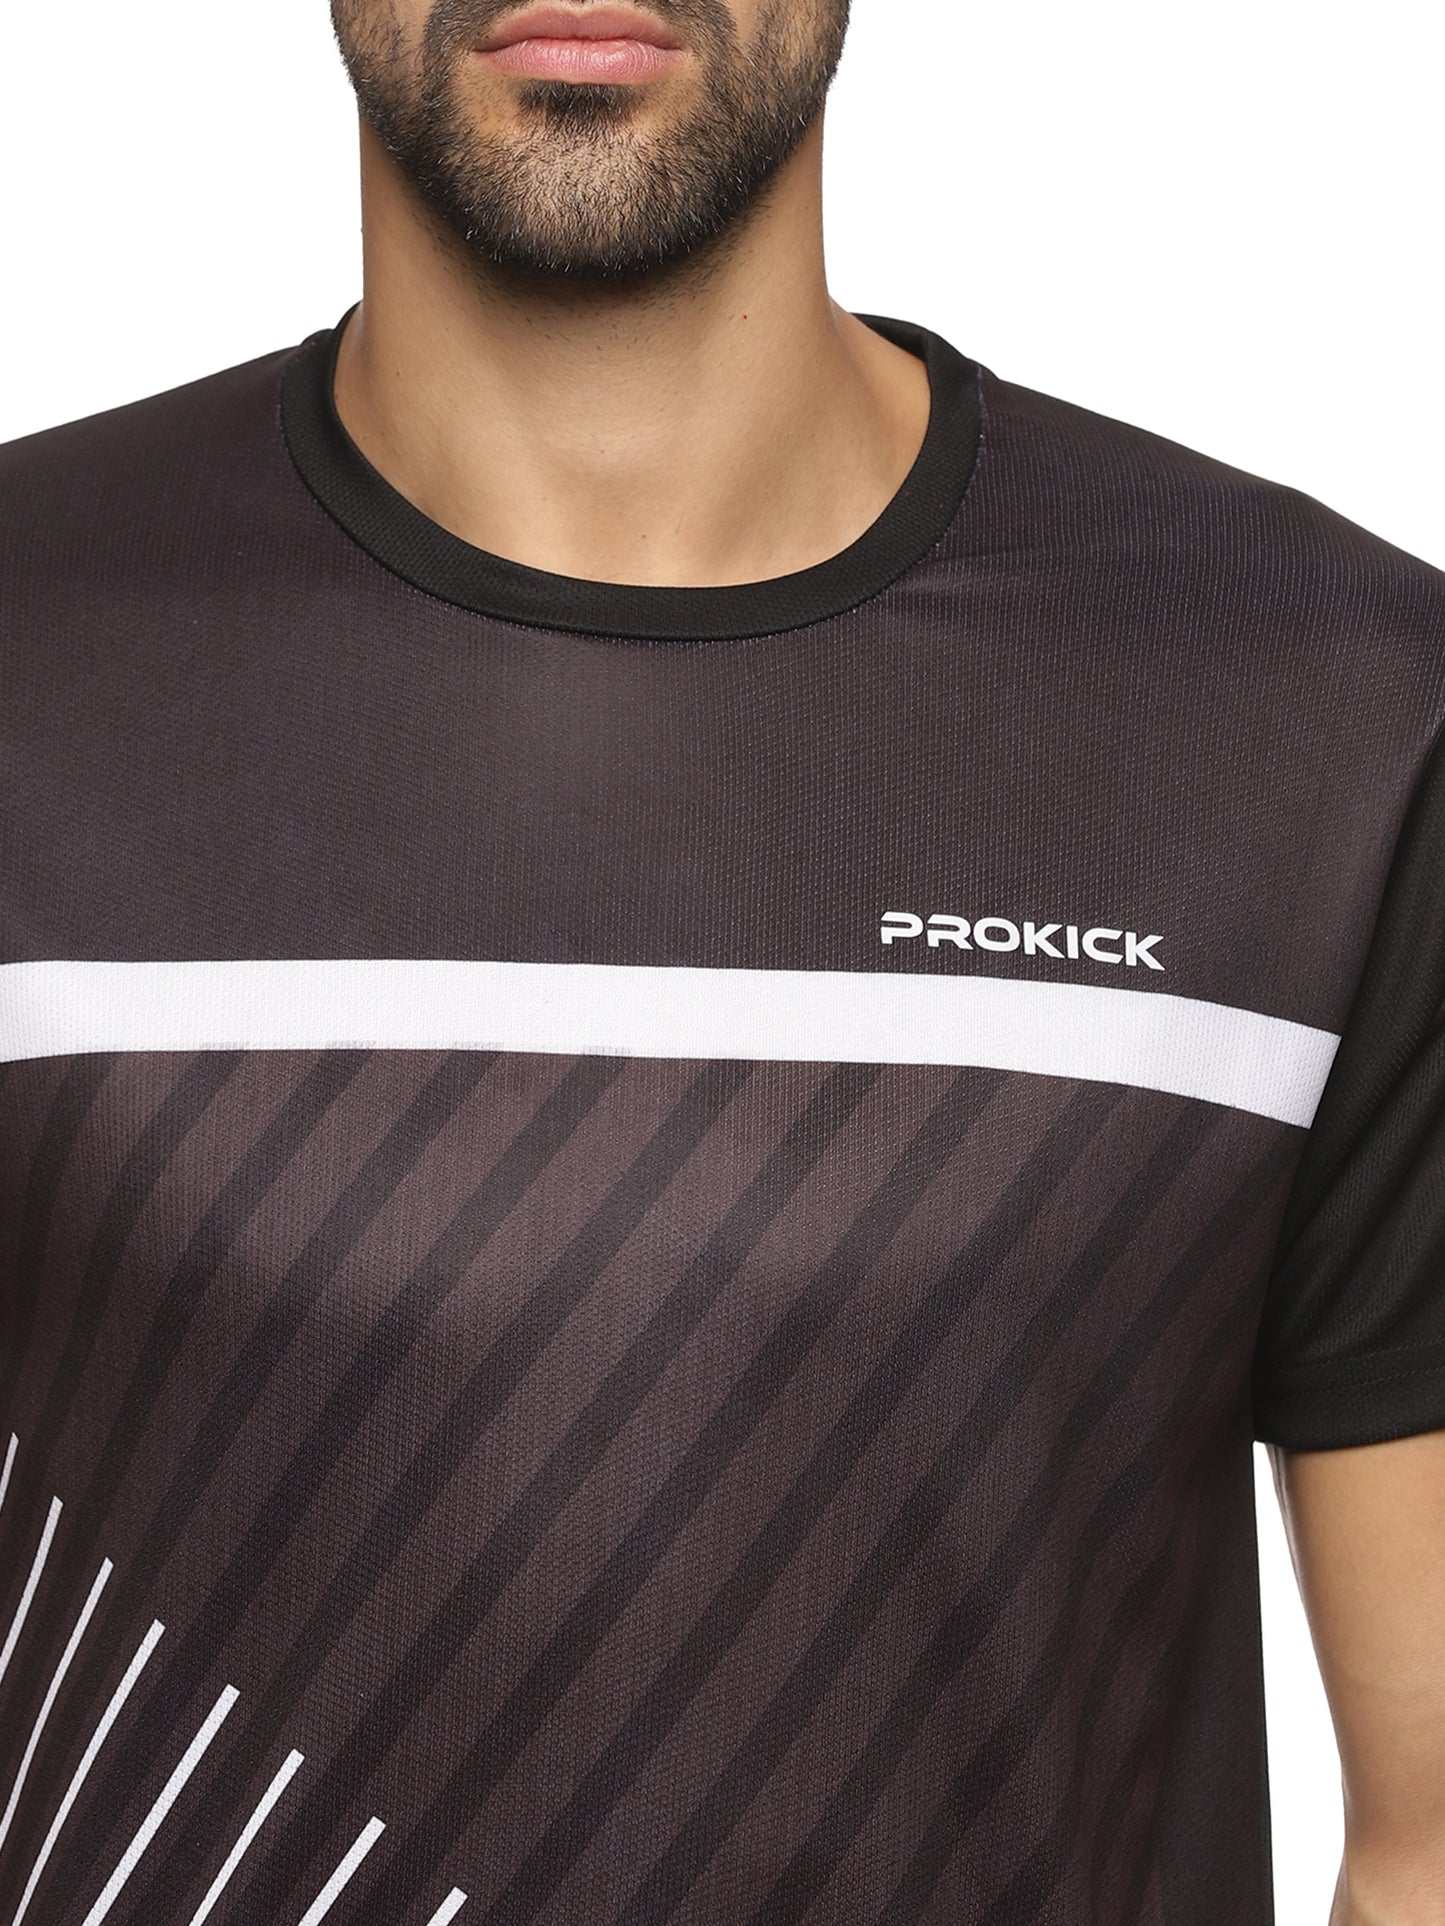 Prokick RNT-HS002 Round Neck Half Sleeves Sports Tshirt - Best Price online Prokicksports.com